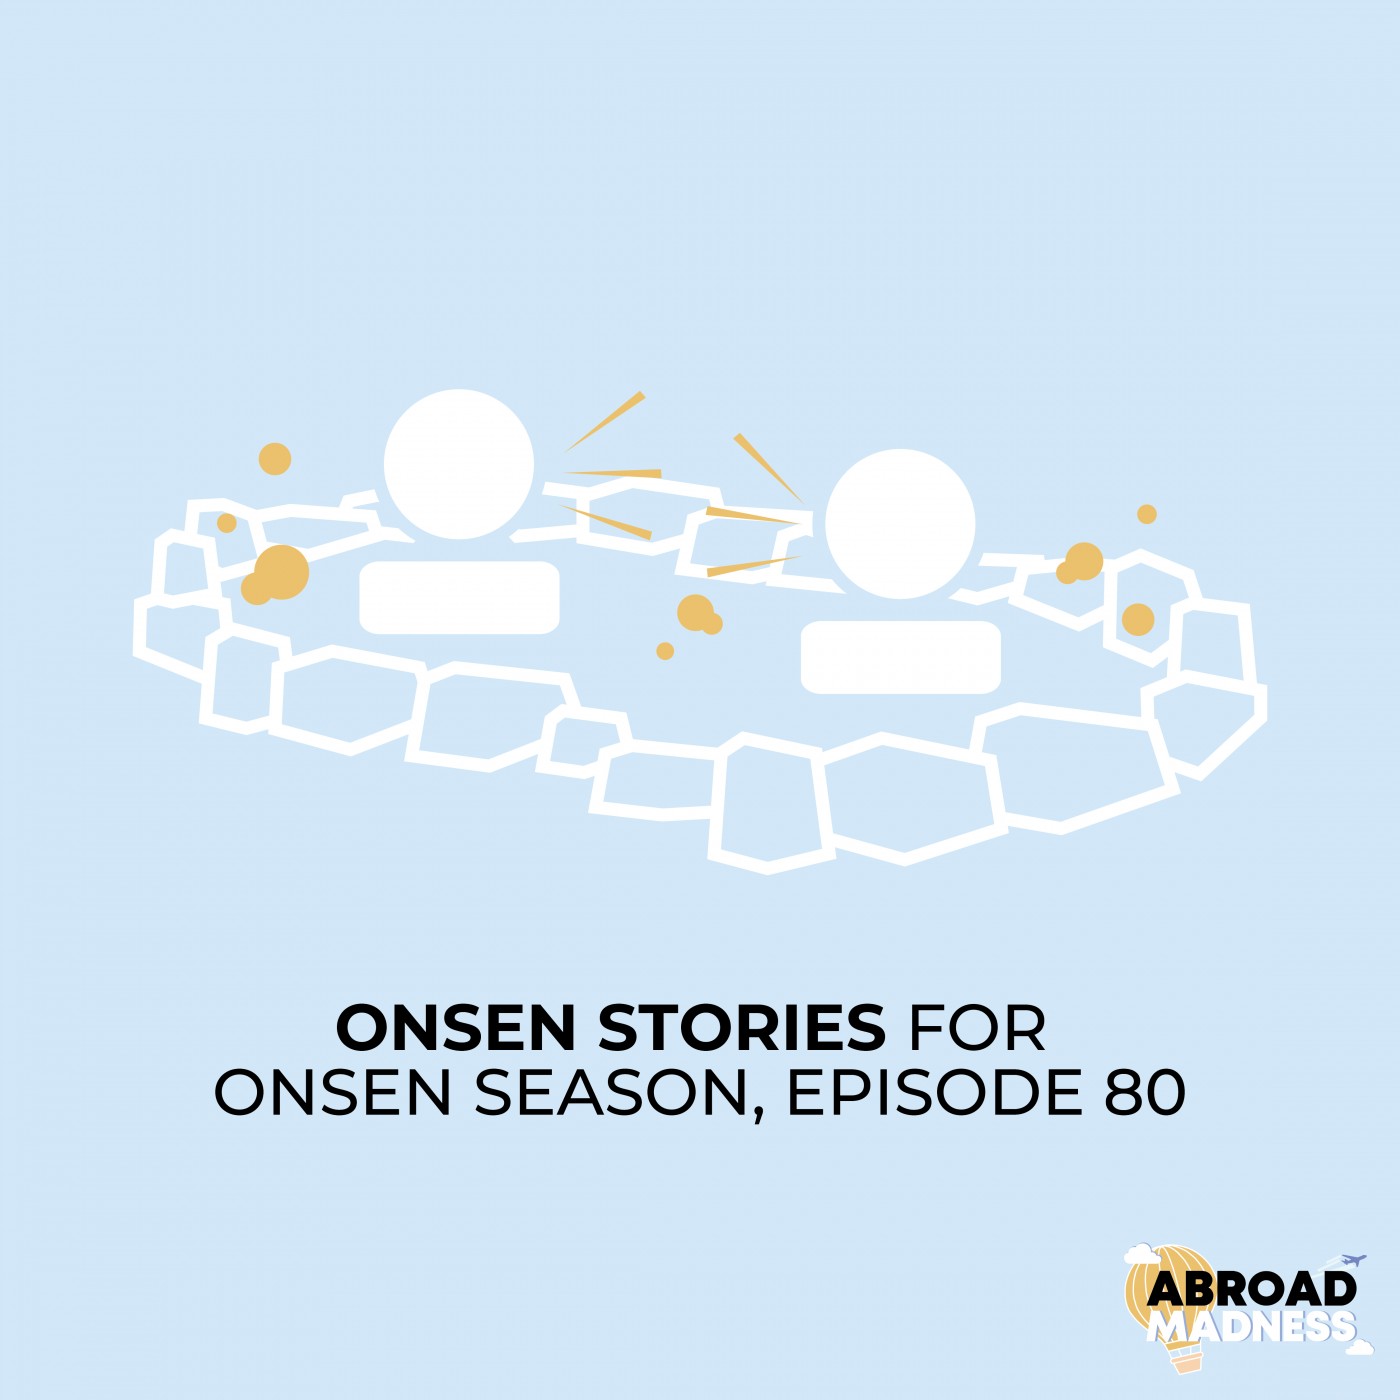 Onsen Stories for Onsen Season, Episode 80